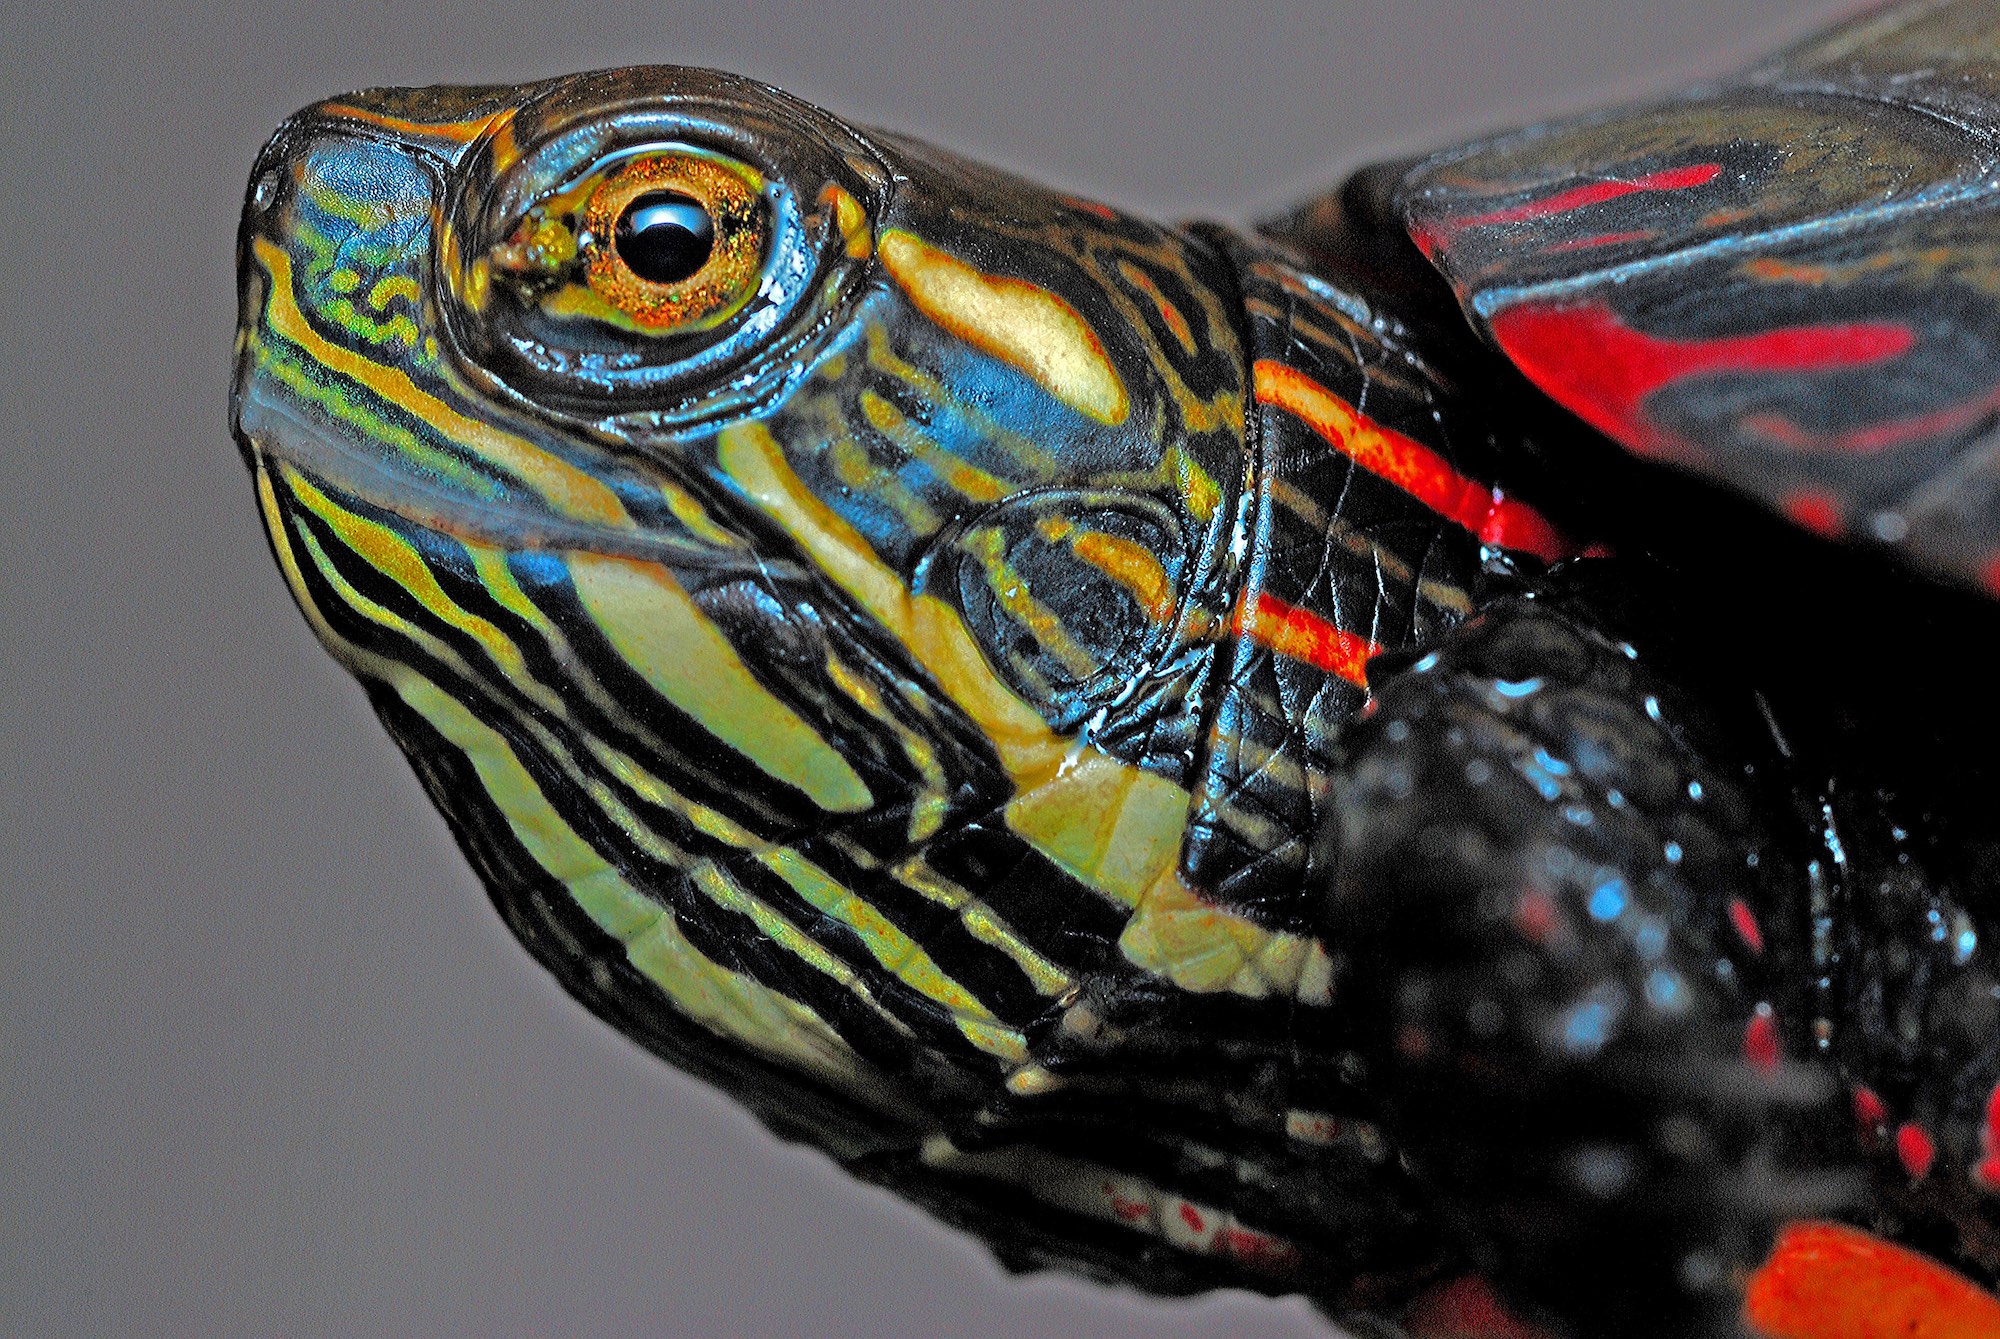 Painted Turtle head.